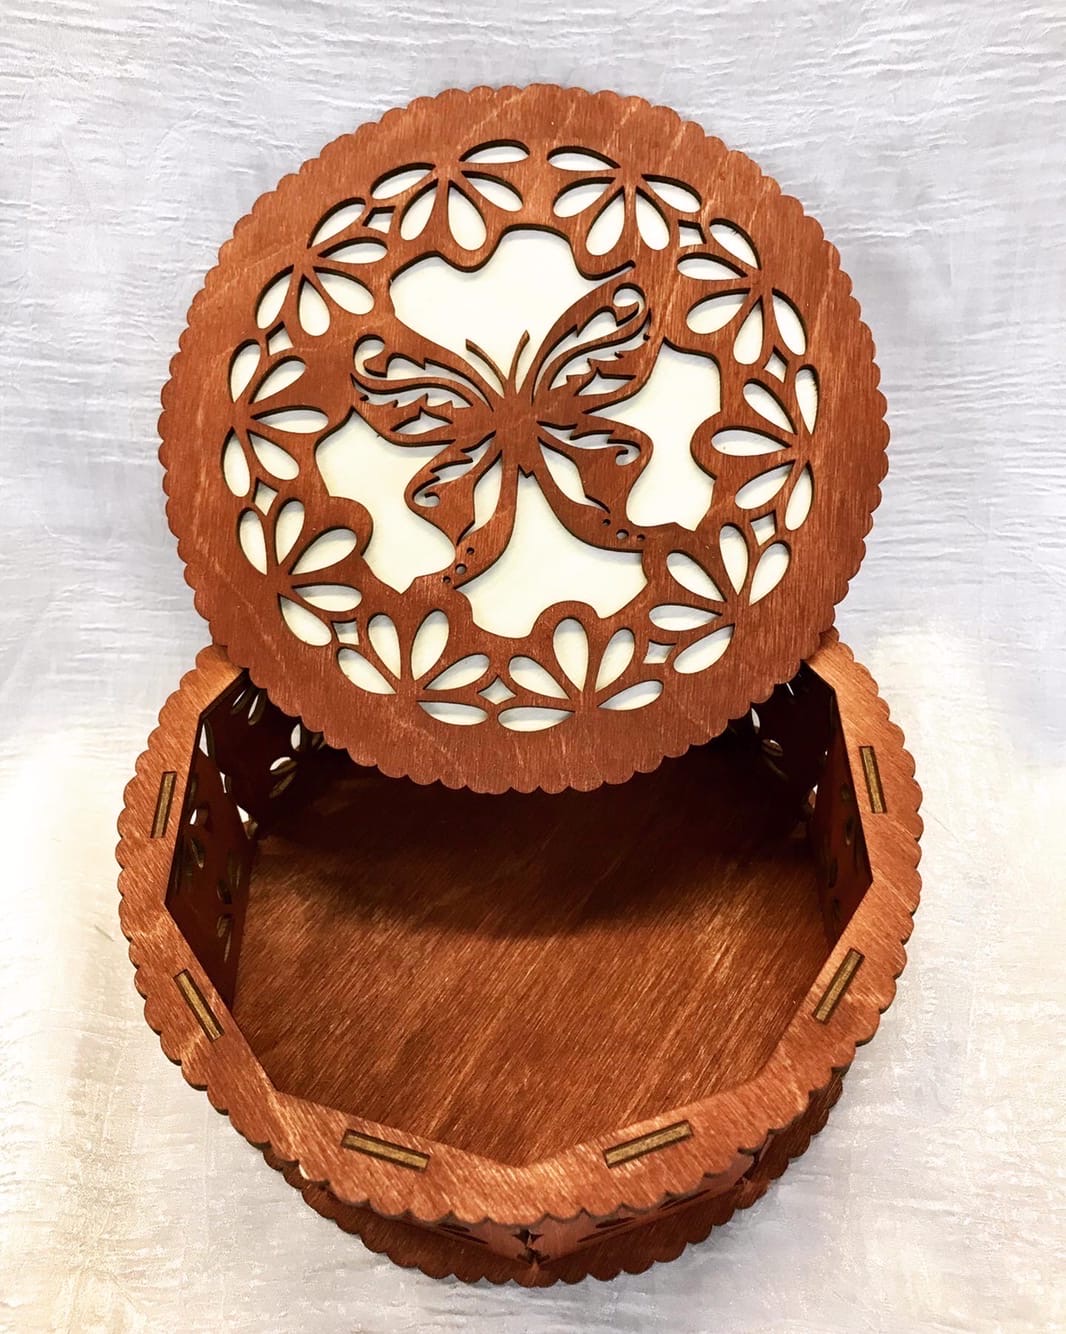 Plantilla de corte por láser de caja redonda con diseño de mariposa decorativa